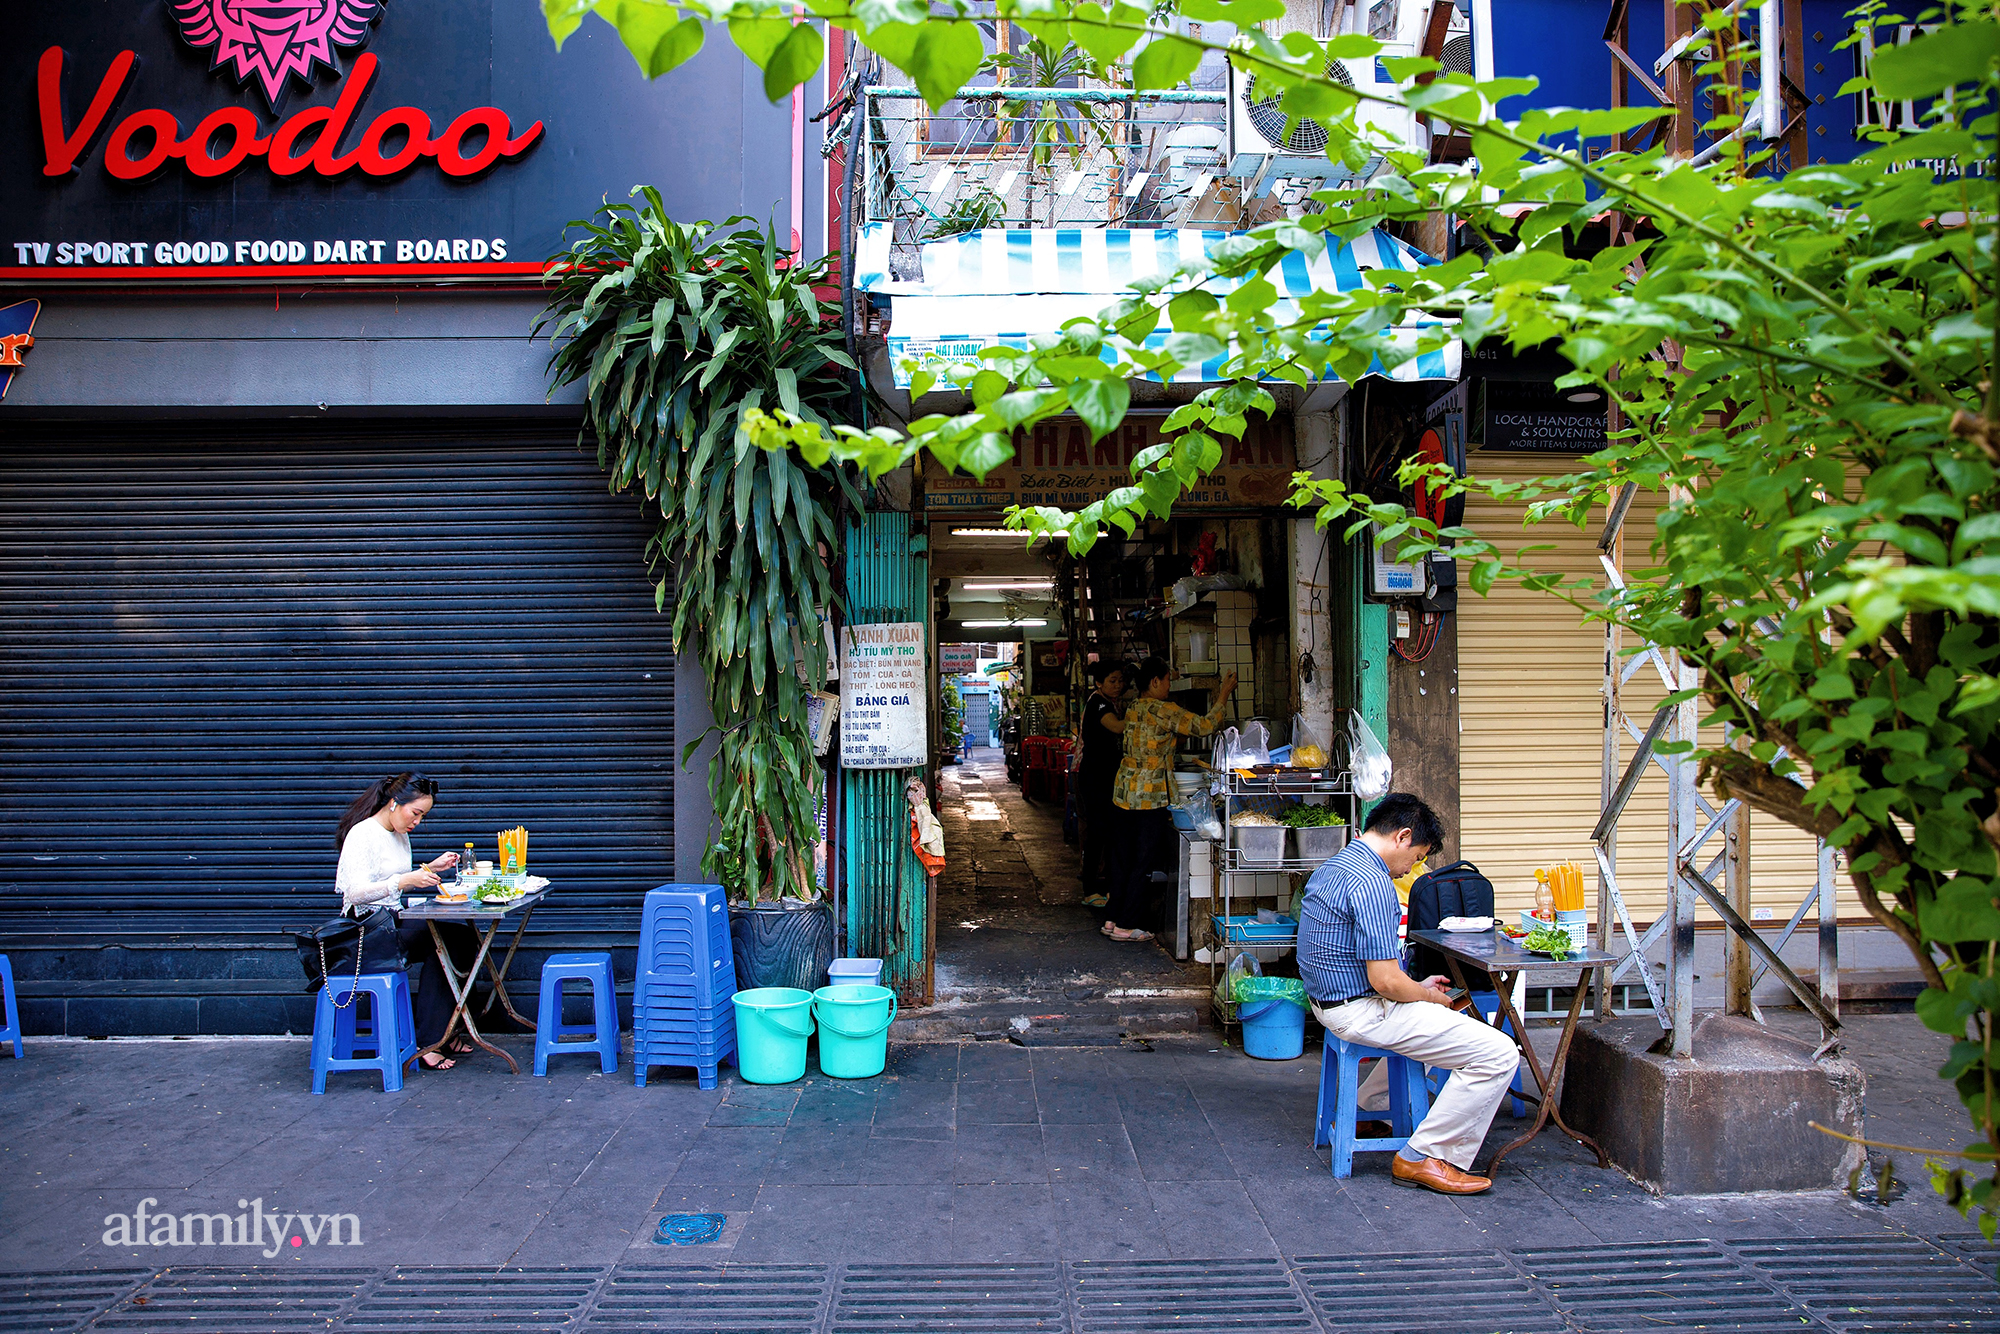 Tiệm hủ tiếu níu kéo "Thanh Xuân" hơn 70 năm của người Sài Gòn, nổi tiếng với nồi sốt cà chua hầm 3 đời và sở hữu tấm bảng hiệu được "định giá" nghìn đô! - Ảnh 2.